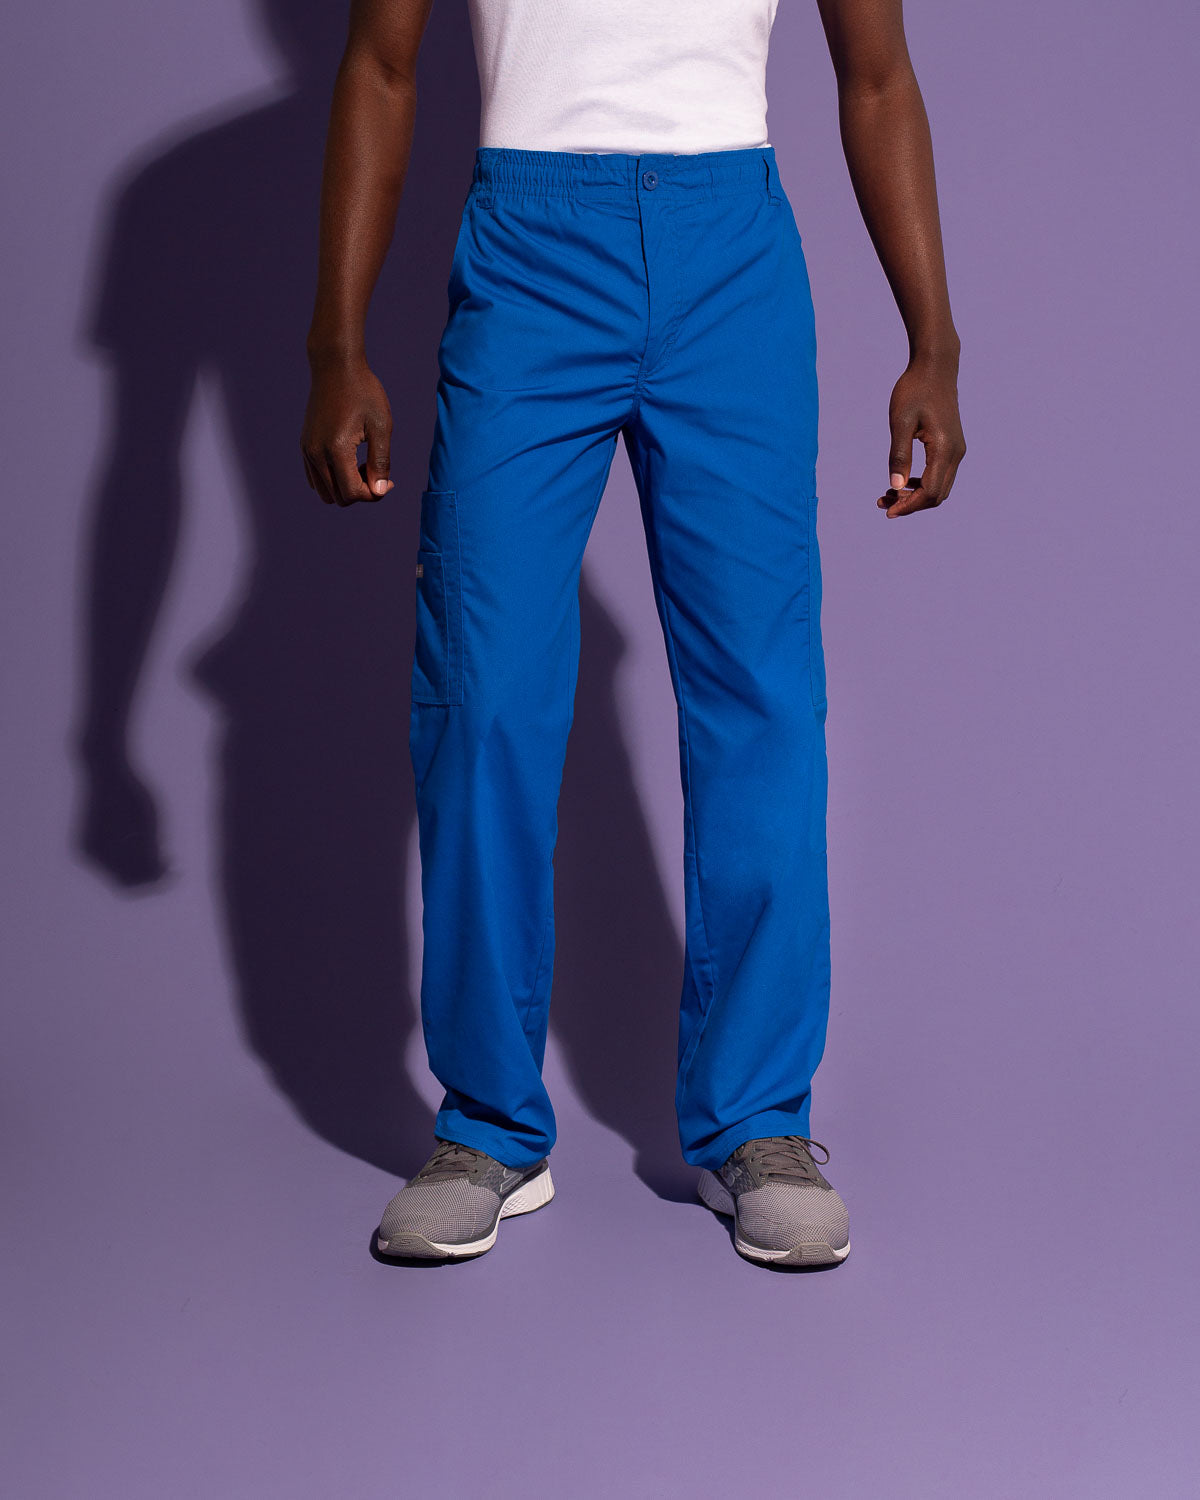 Pantalón Hombre Azul Rey Uniformes | Scorpi